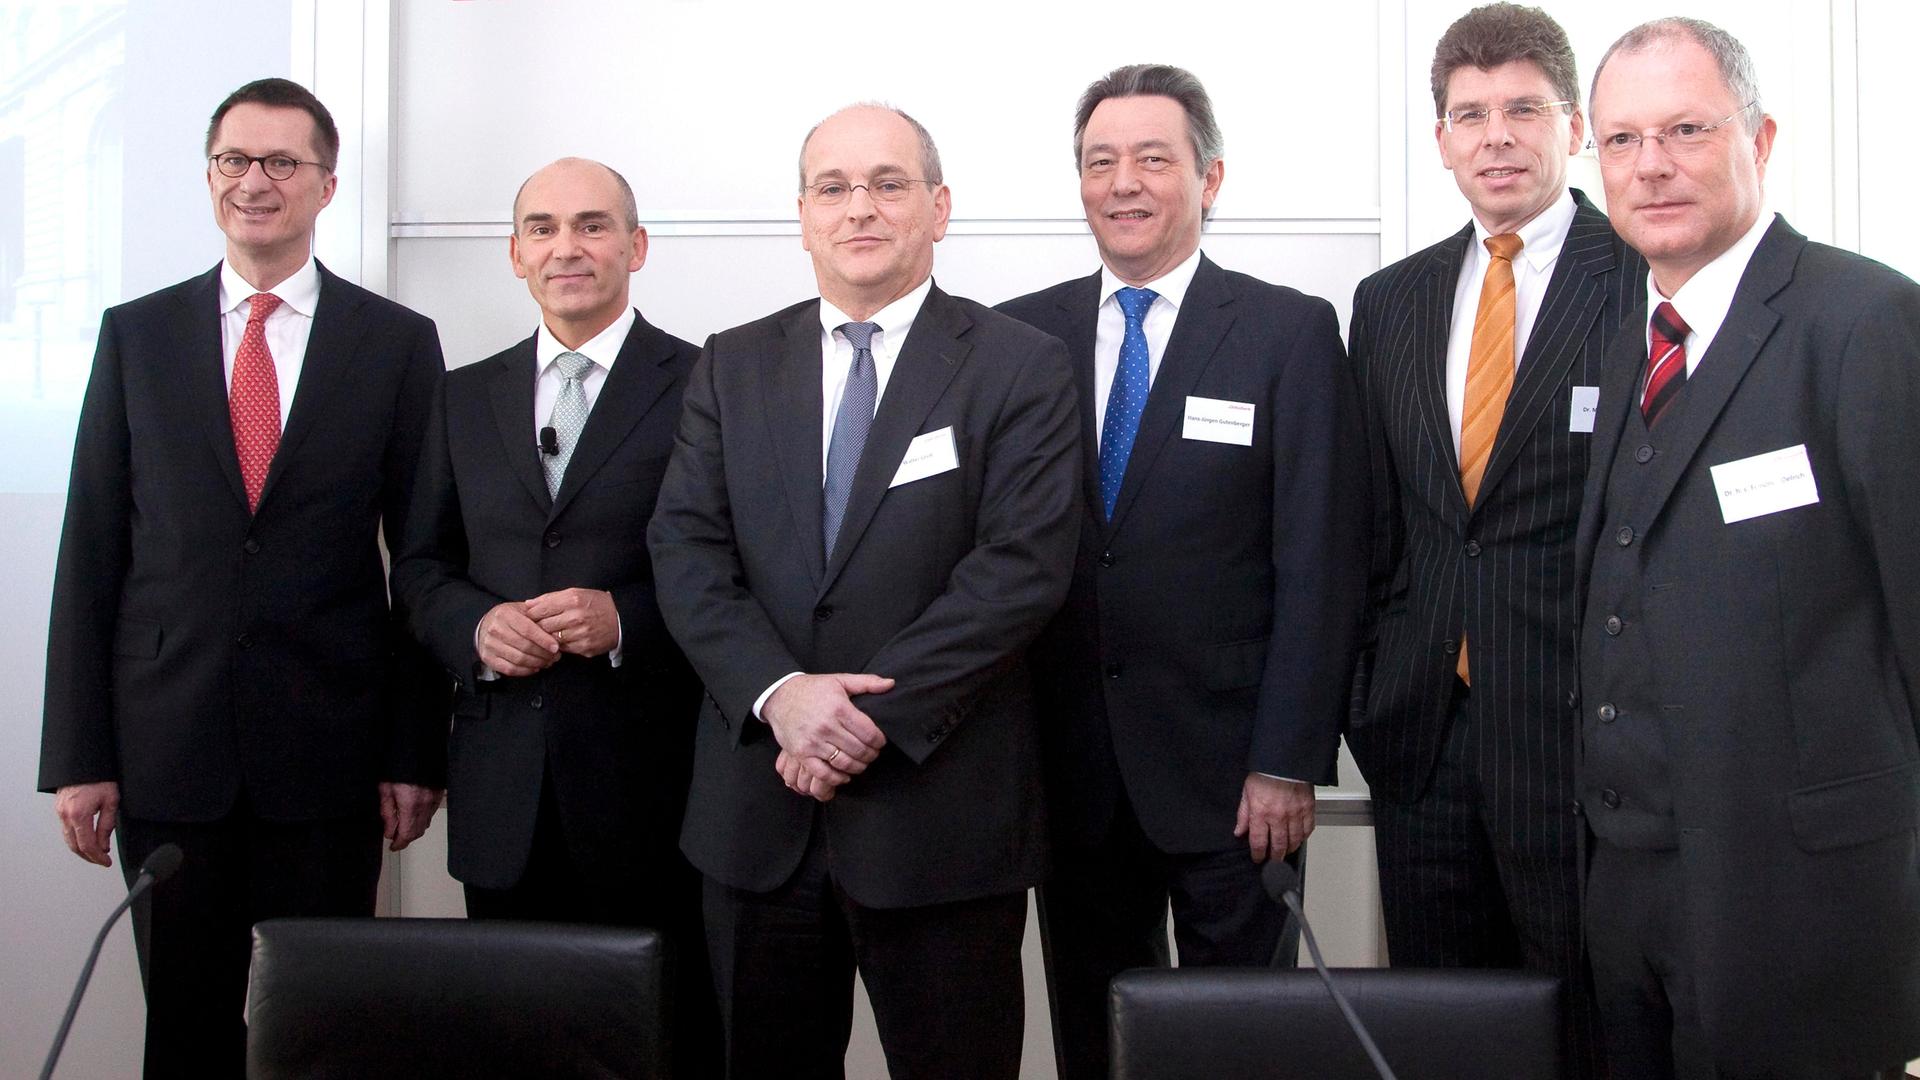 Reiner Männer-Vorstand der Deka Bank im Jahr 2010 in Frankfurt am Main.